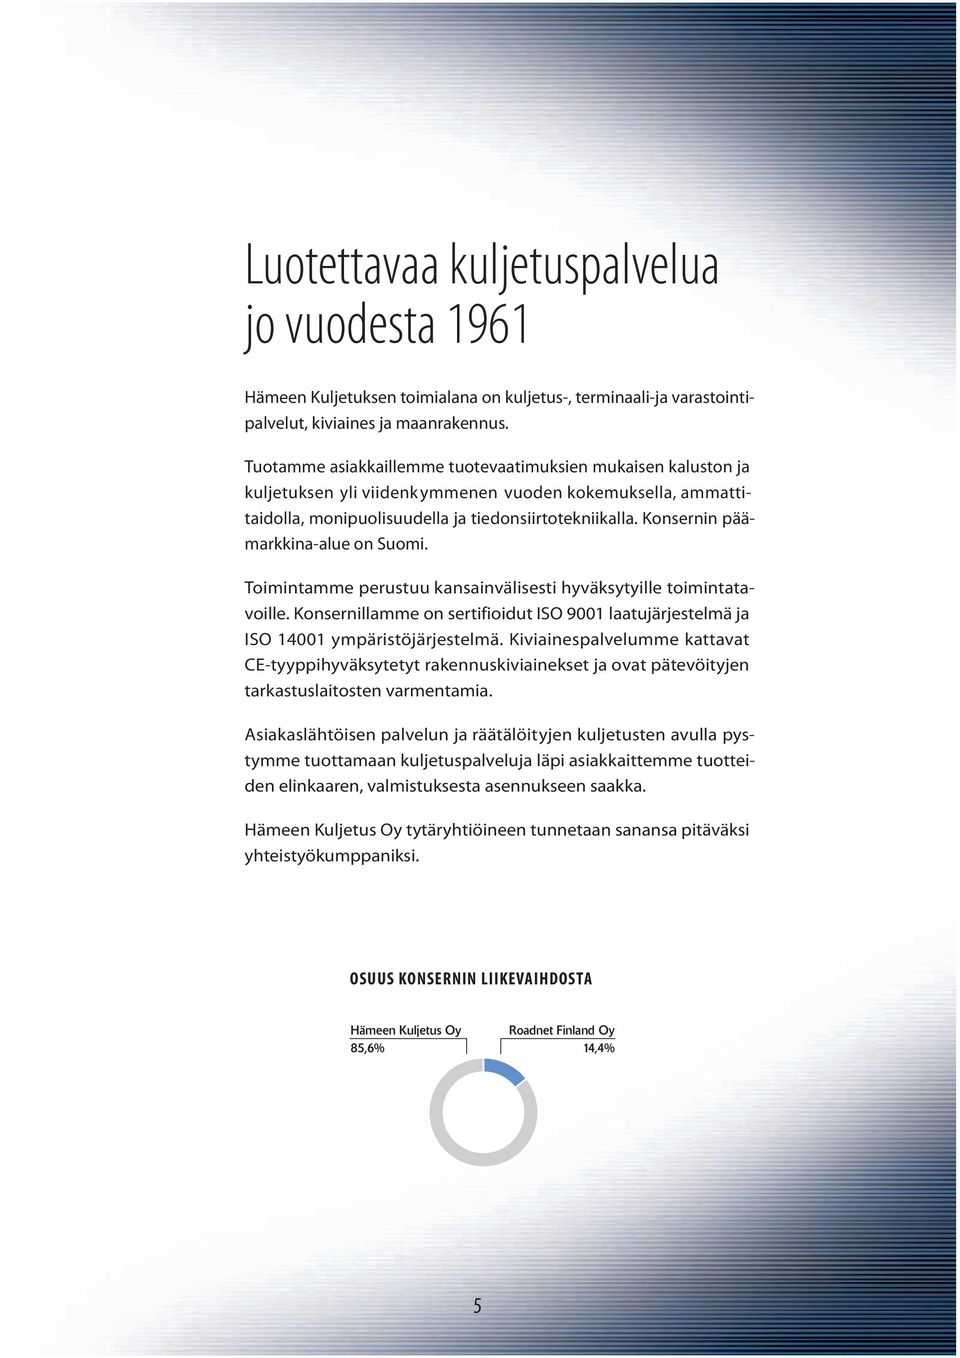 Konsernin päämarkkina-alue on Suomi. Toimintamme perustuu kansainvälisesti hyväksytyille toimintatavoille. Konsernillamme on sertifioidut ISO 9001 laatujärjestelmä ja ISO 14001 ympäristöjärjestelmä.